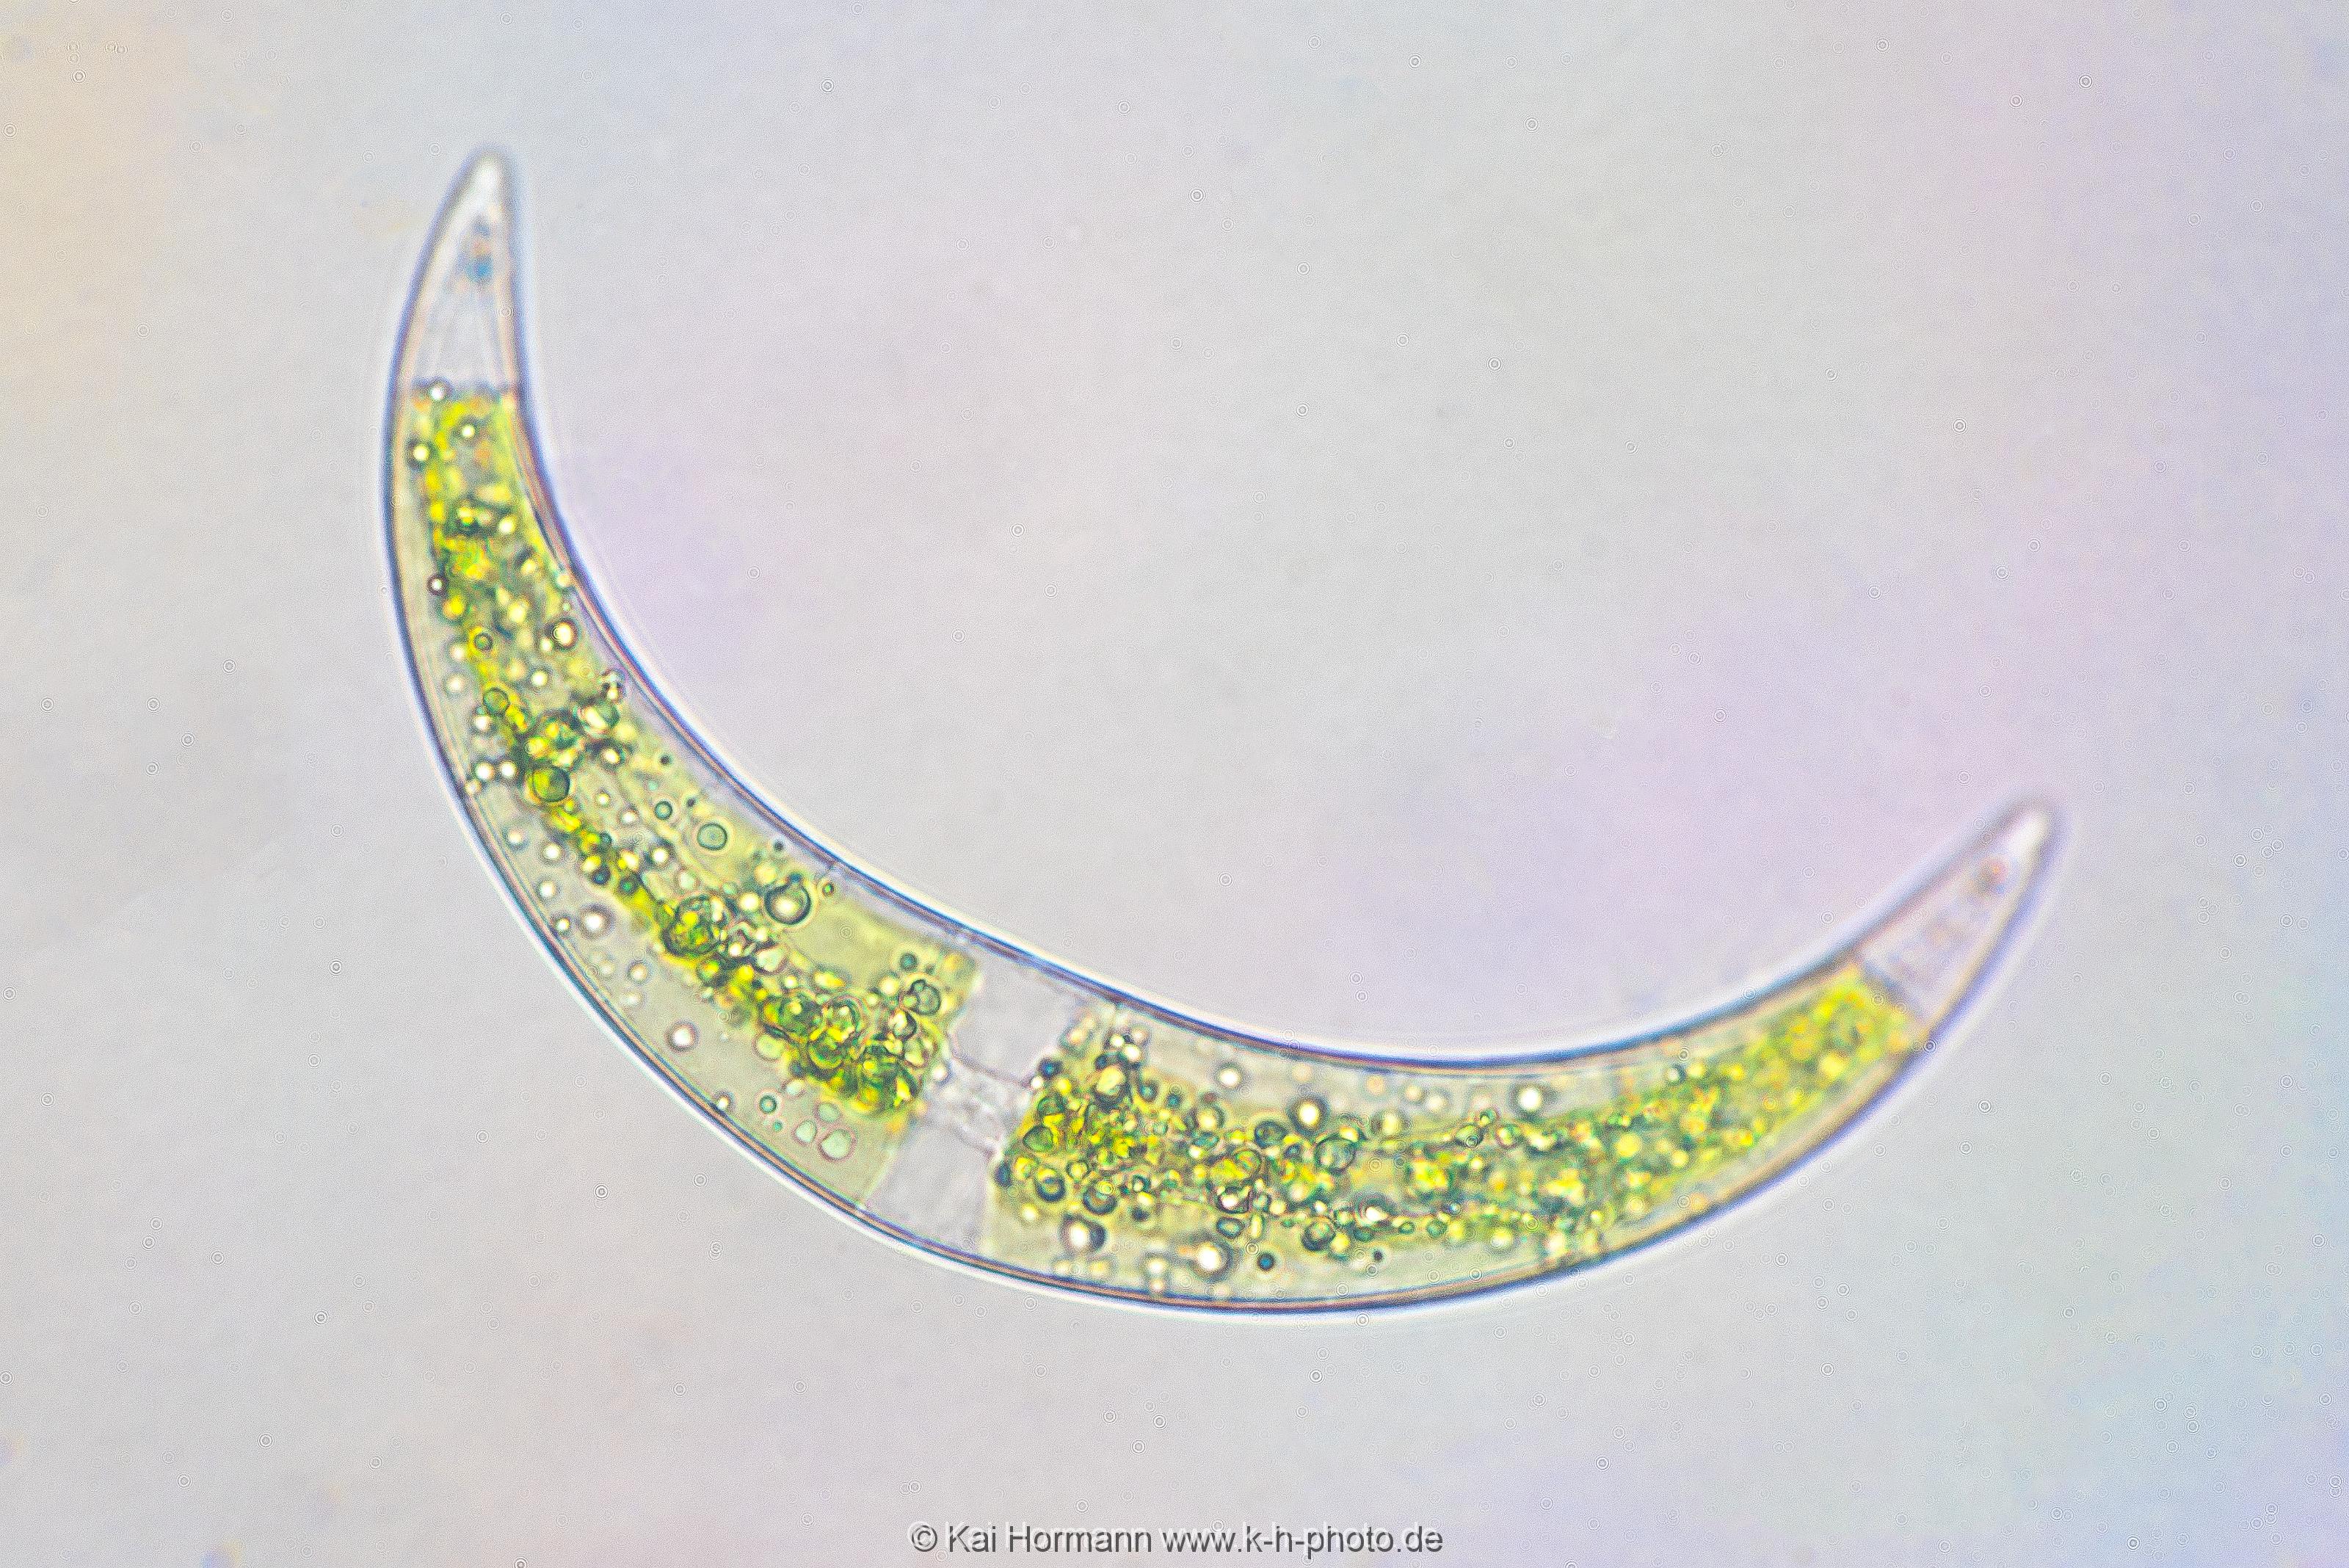 Mondalge Mikrofotografie: Mikroskopische Aufnahmen von Einzellern, Algen und Kleinstlebewesen.